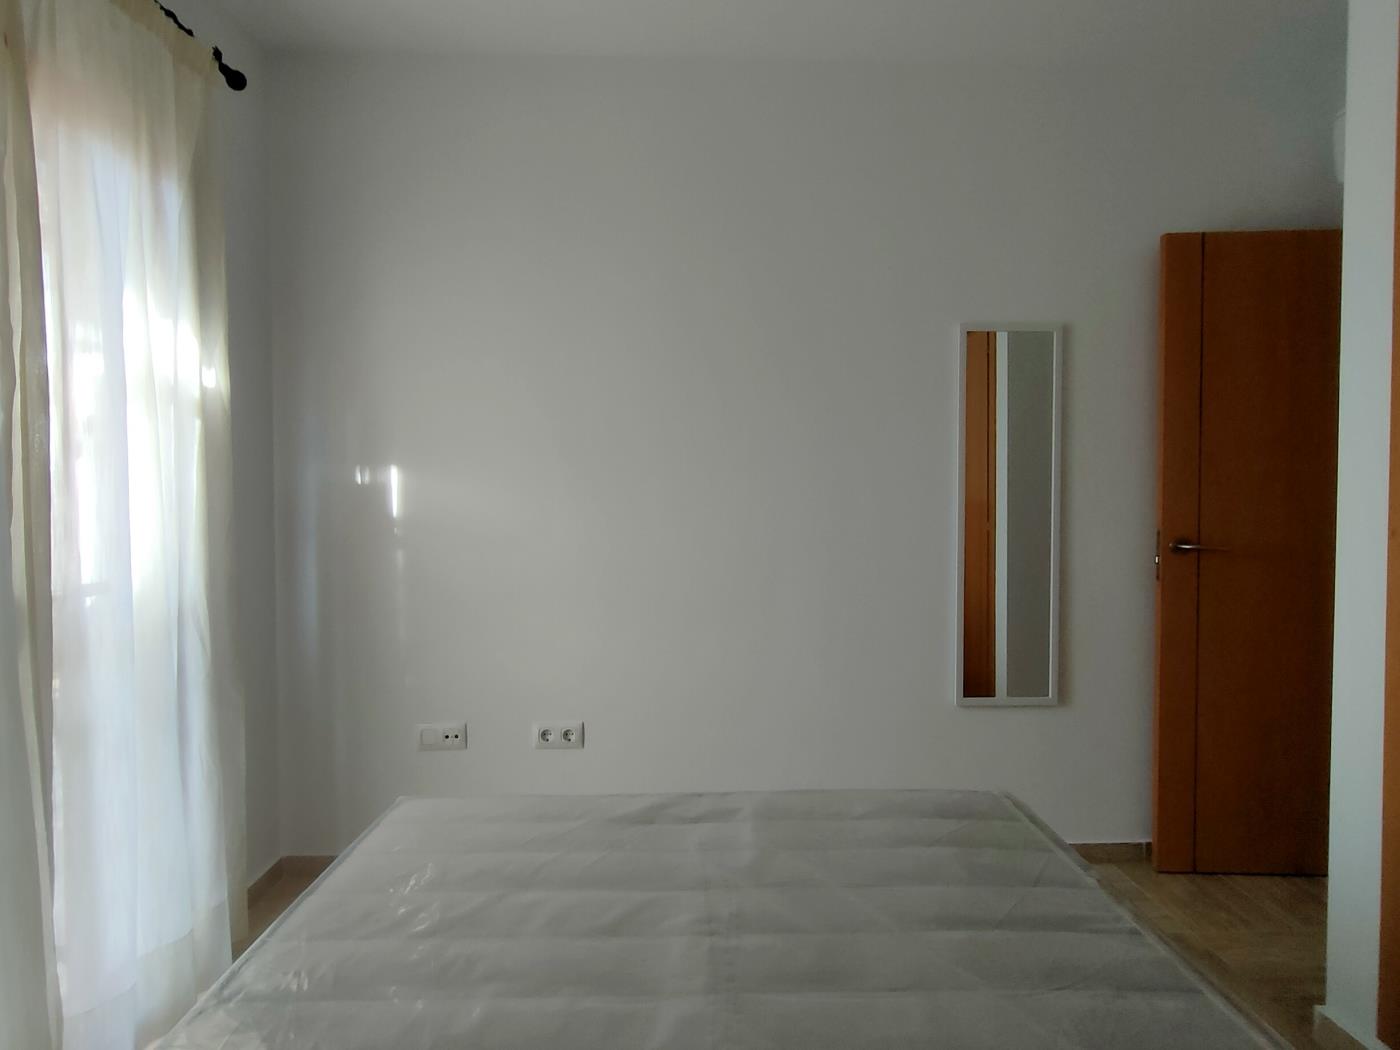 Ref B1. Apartamento en Chiclana de dos dormitorios en planta baja en Chiclana de la Frontera